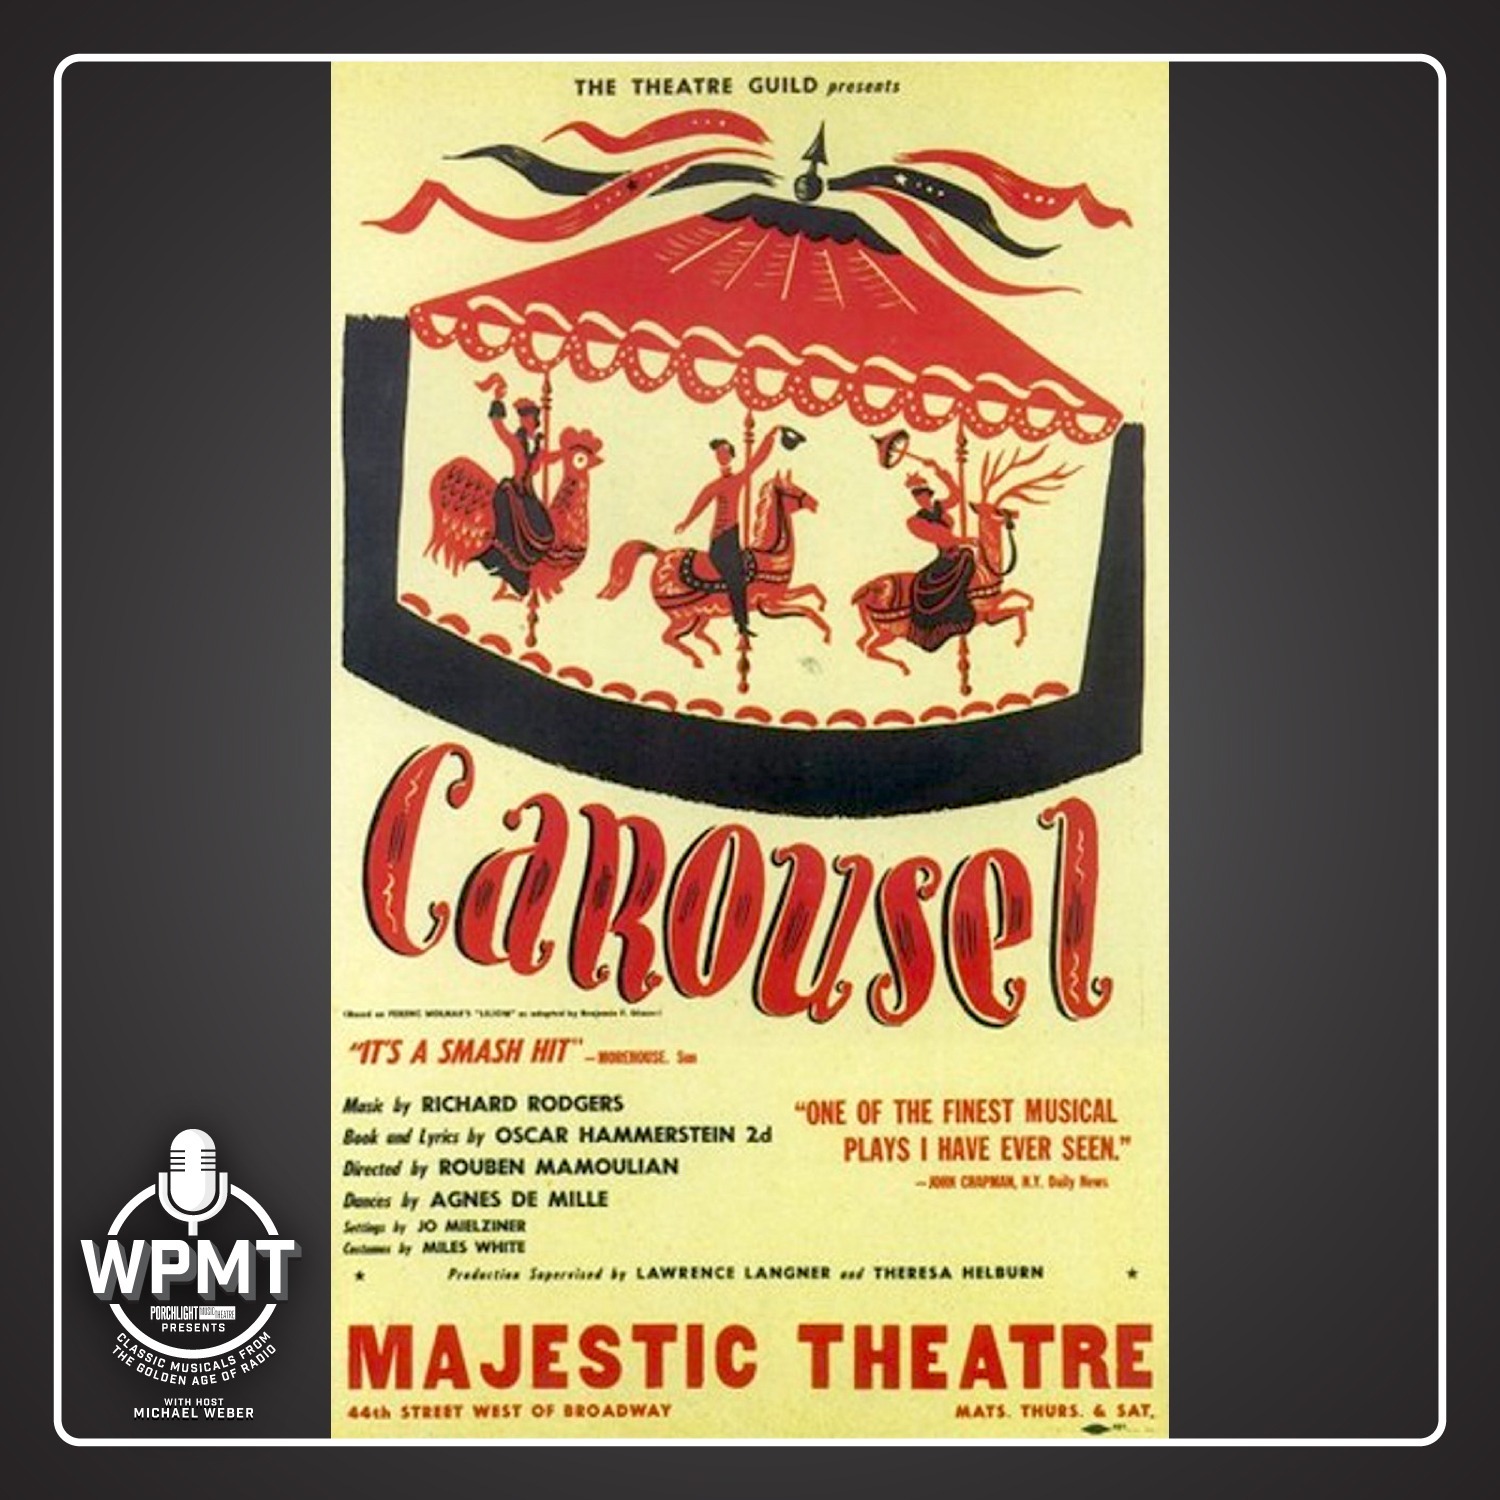 WPMT #136: Carousel